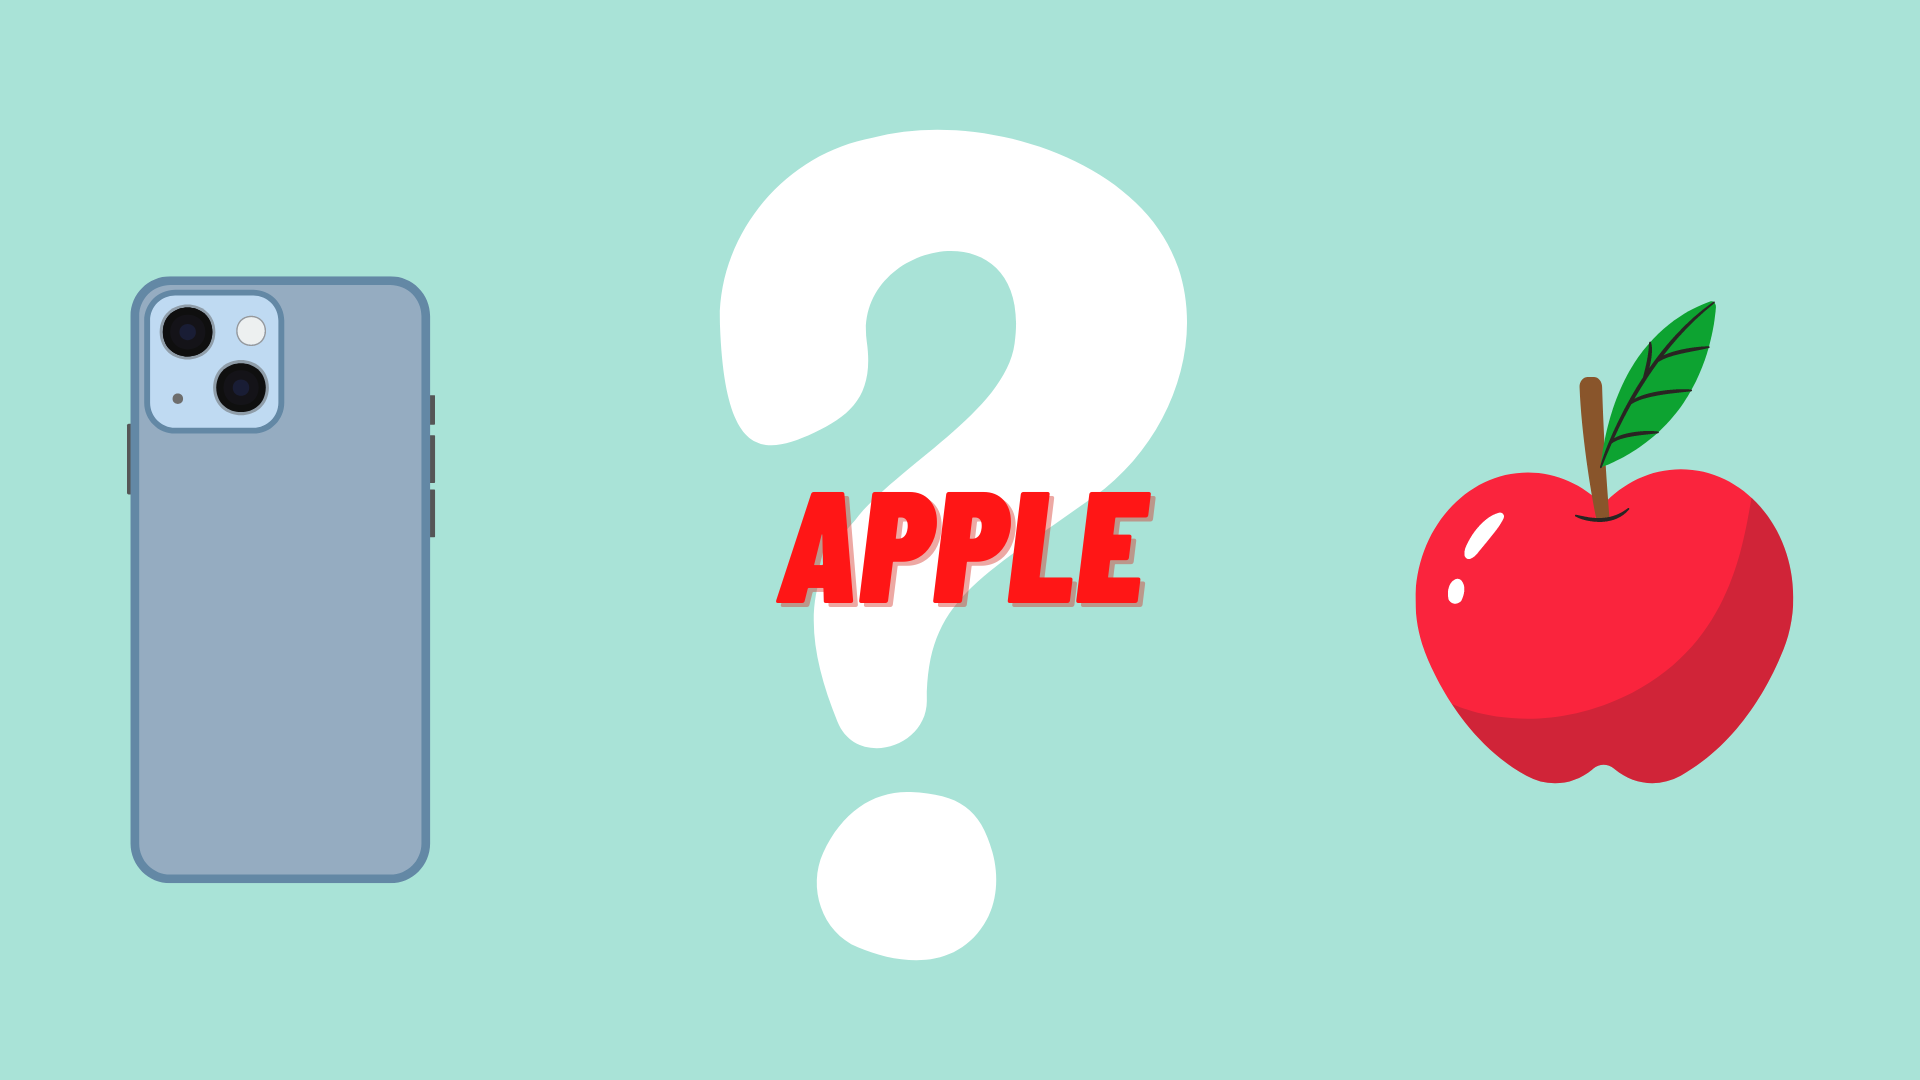 Google xác định Entity giữa quả táo và thương hiệu điện thoại